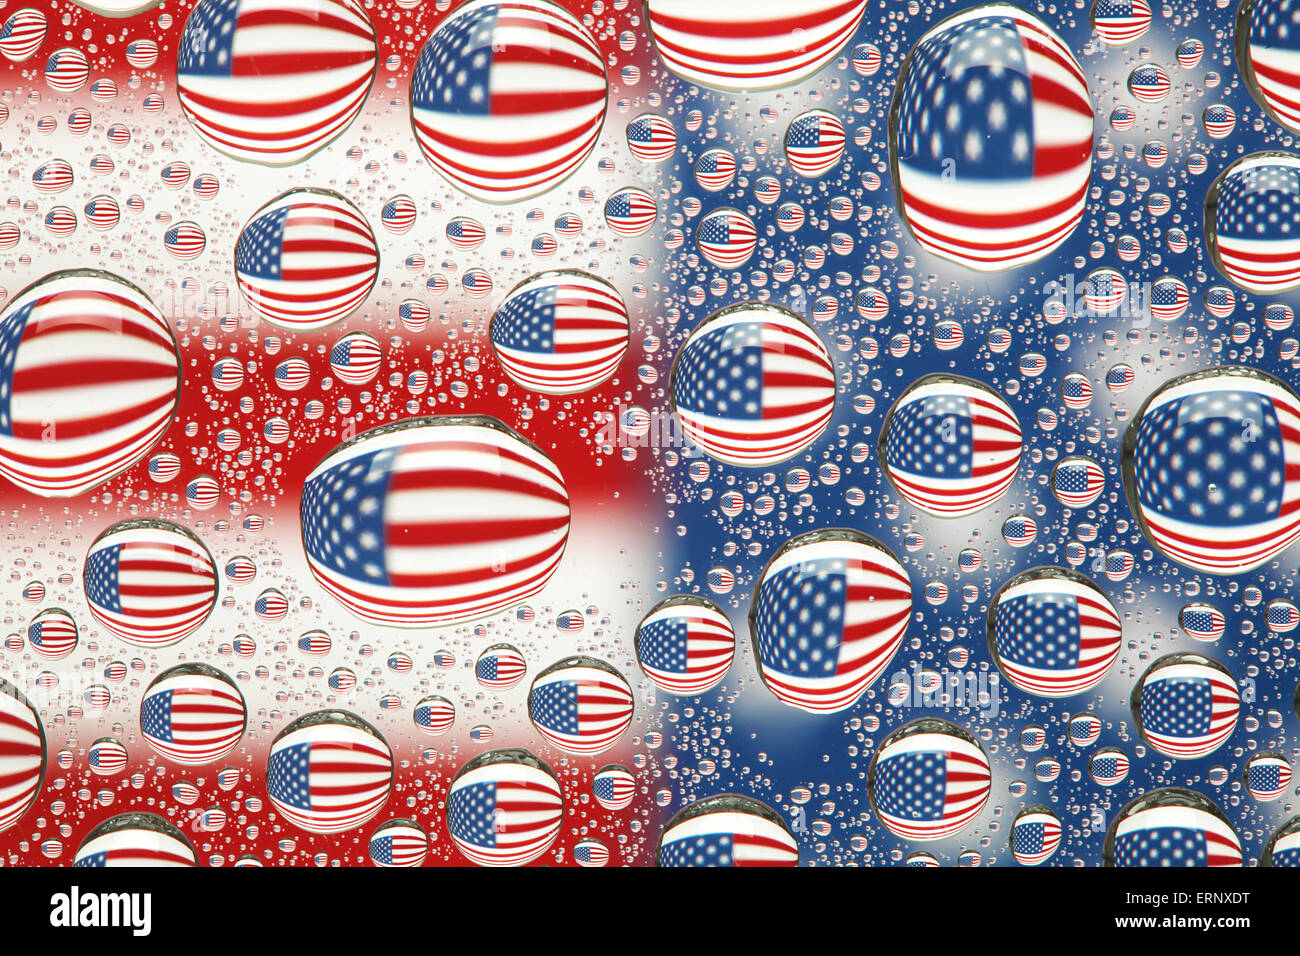 Bandiera americana riflessa nell'acqua scende sullo sfondo Foto Stock